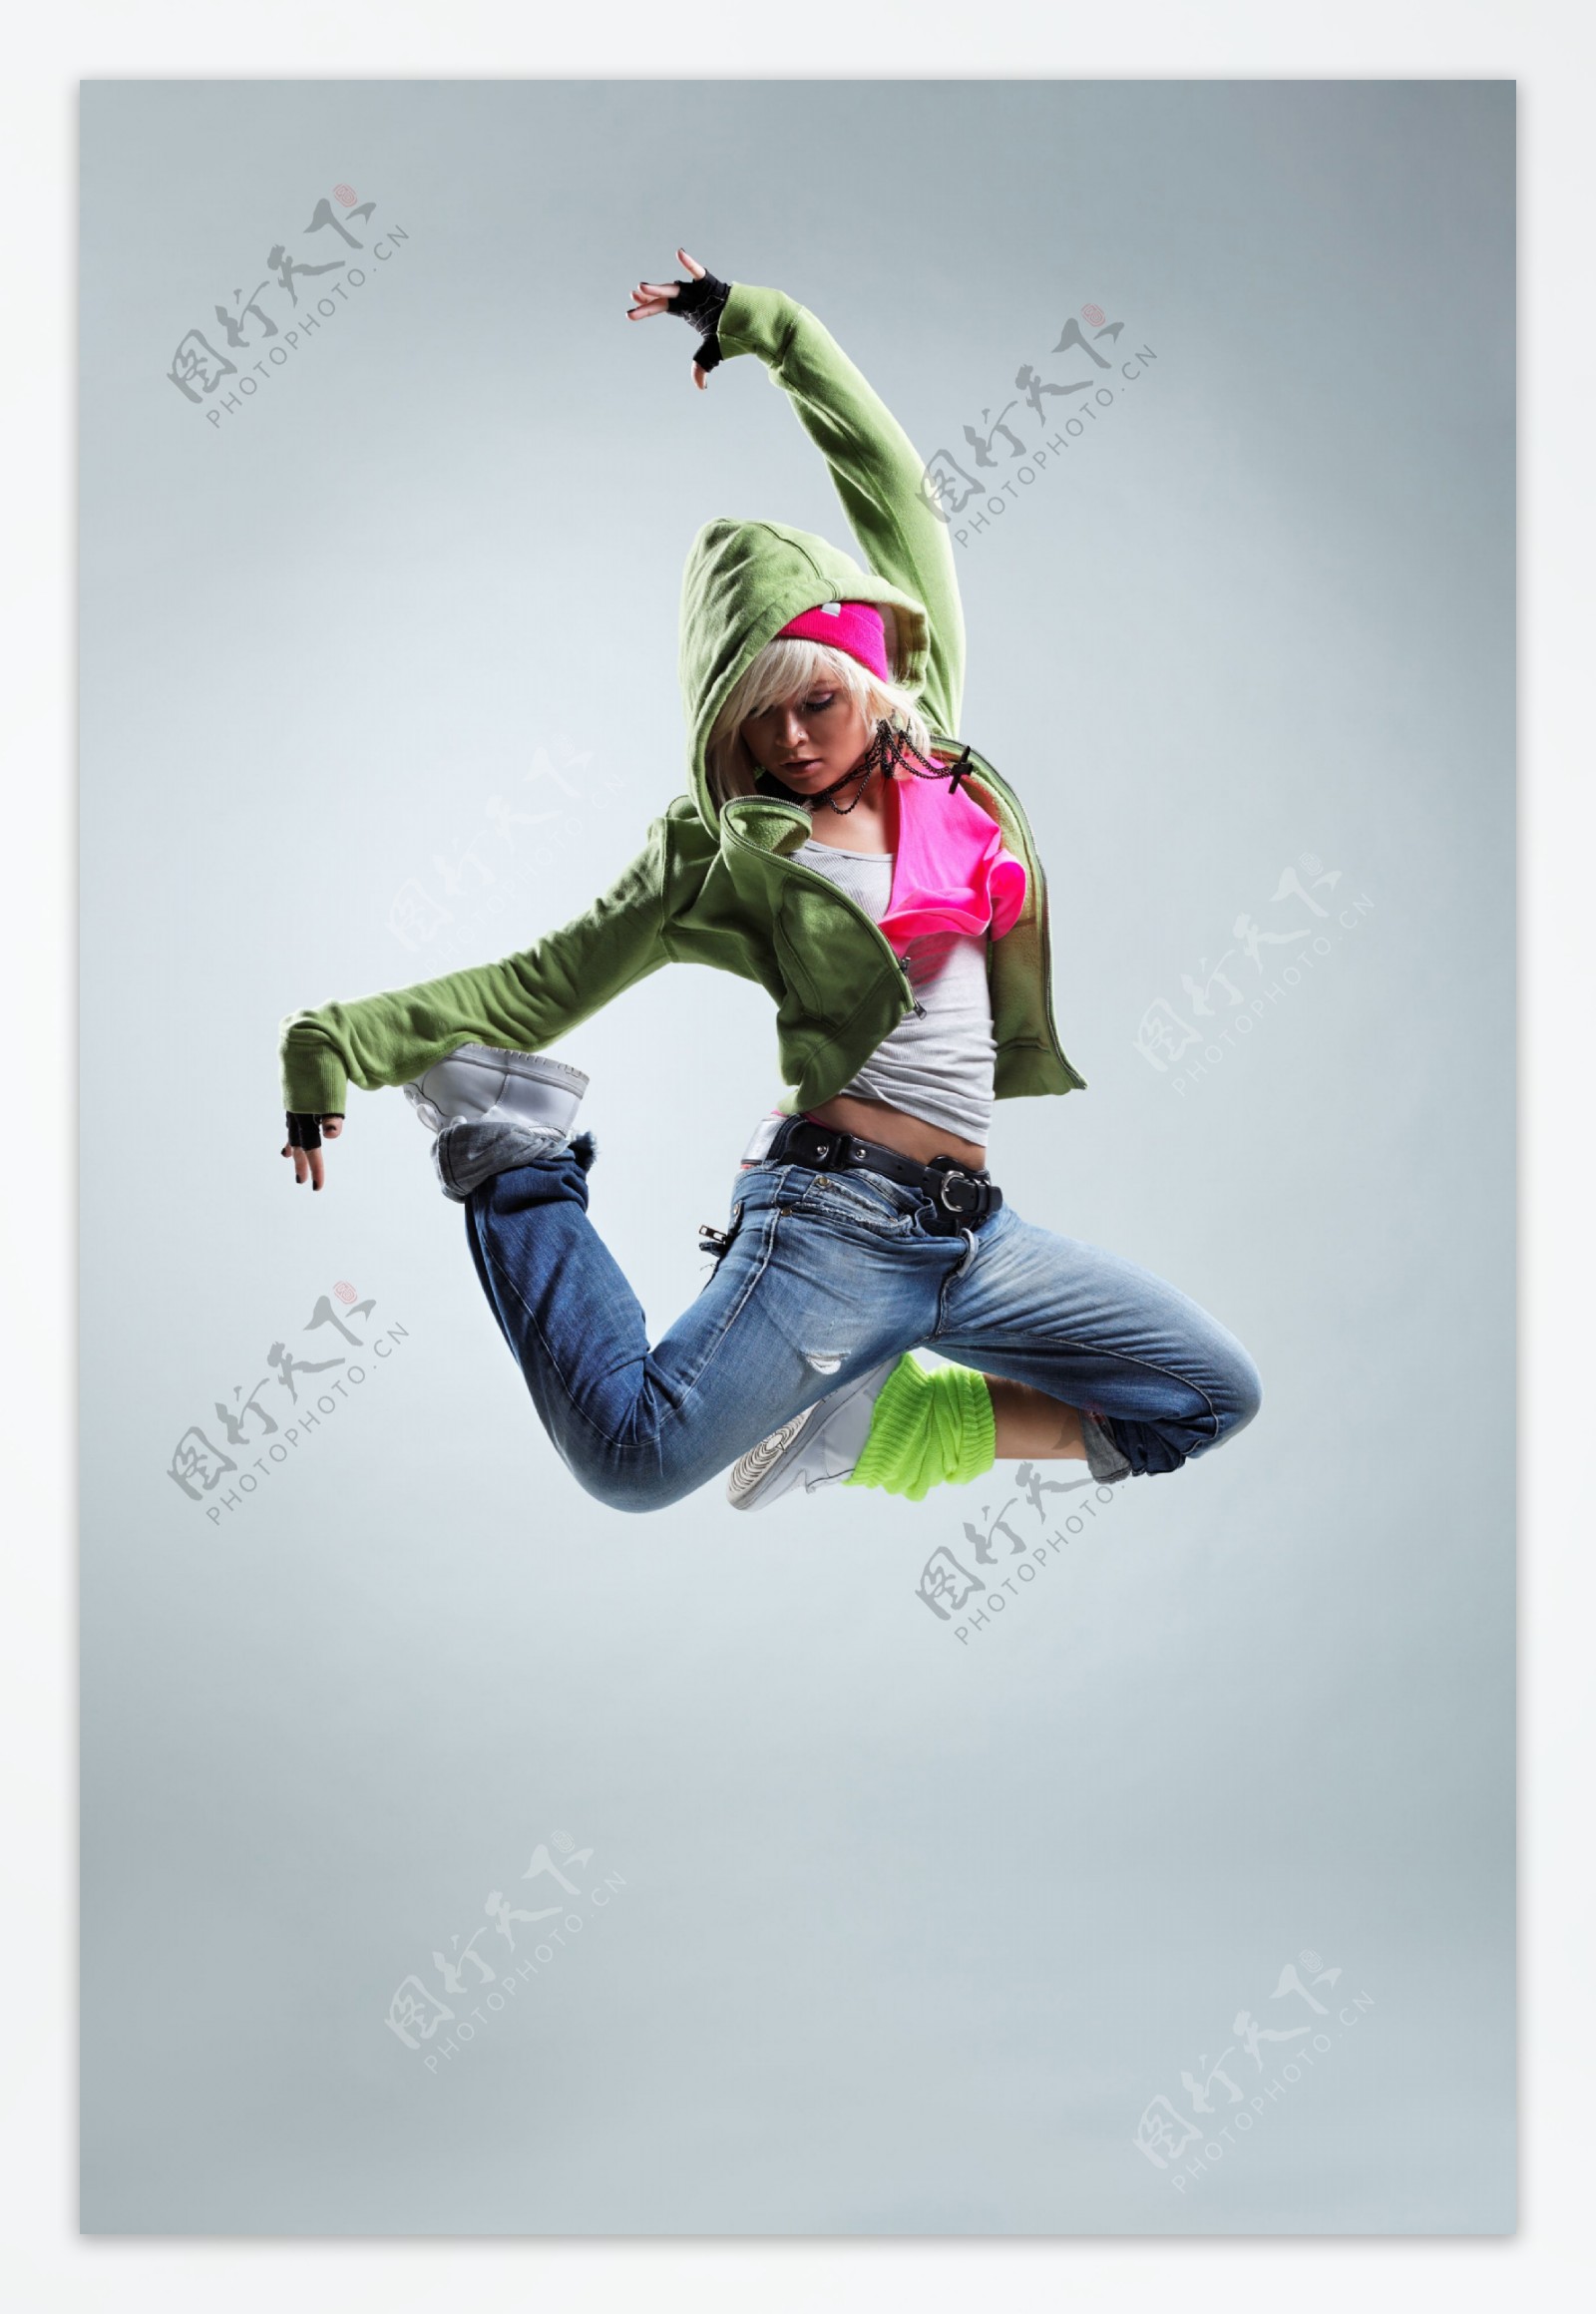 激情跳起的外国女孩图片